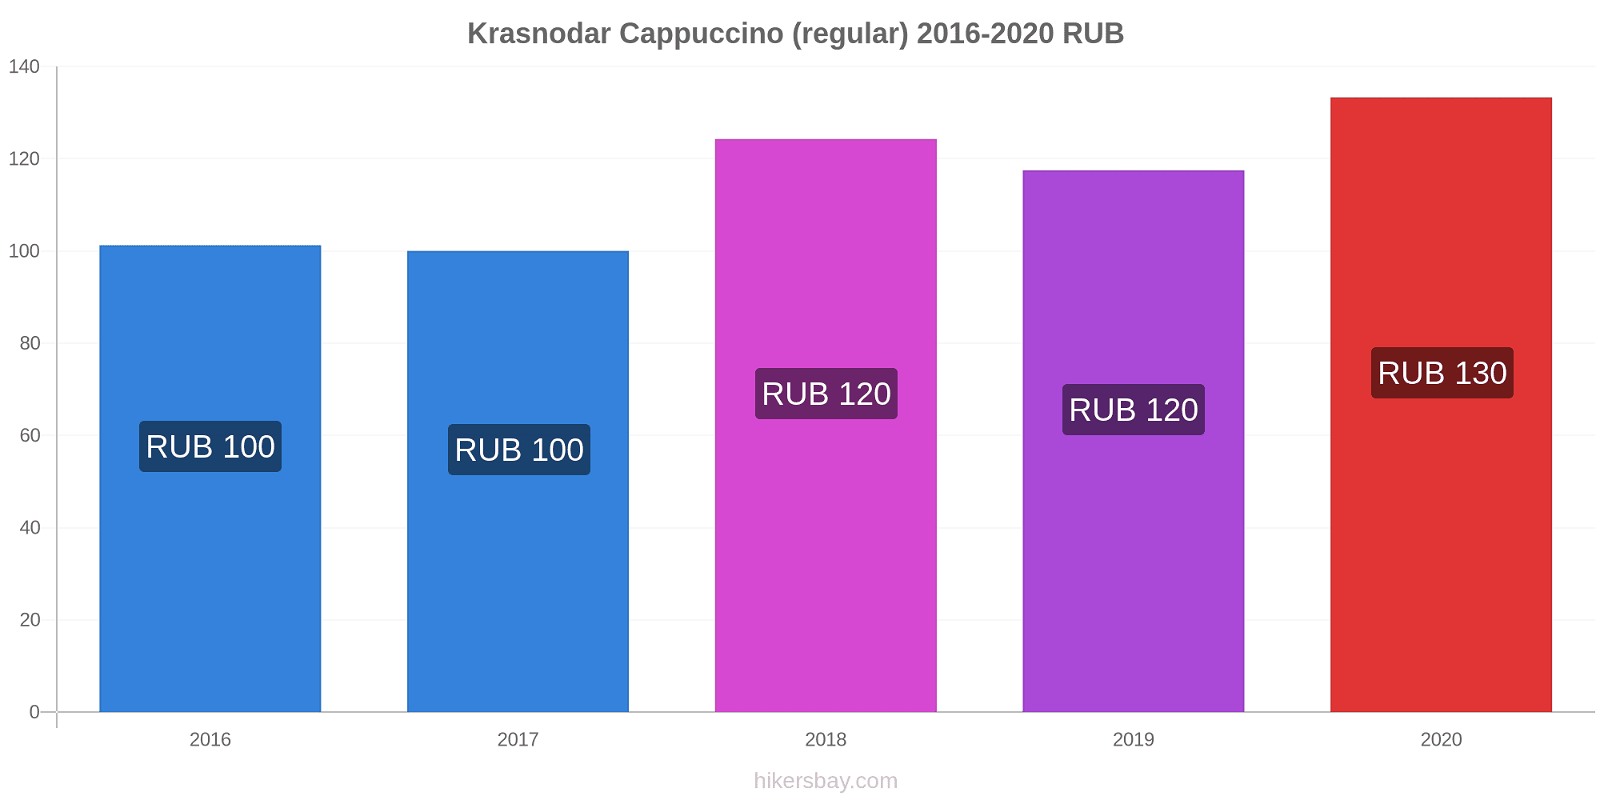 Krasnodar variação de preço Capuccino (regular) hikersbay.com